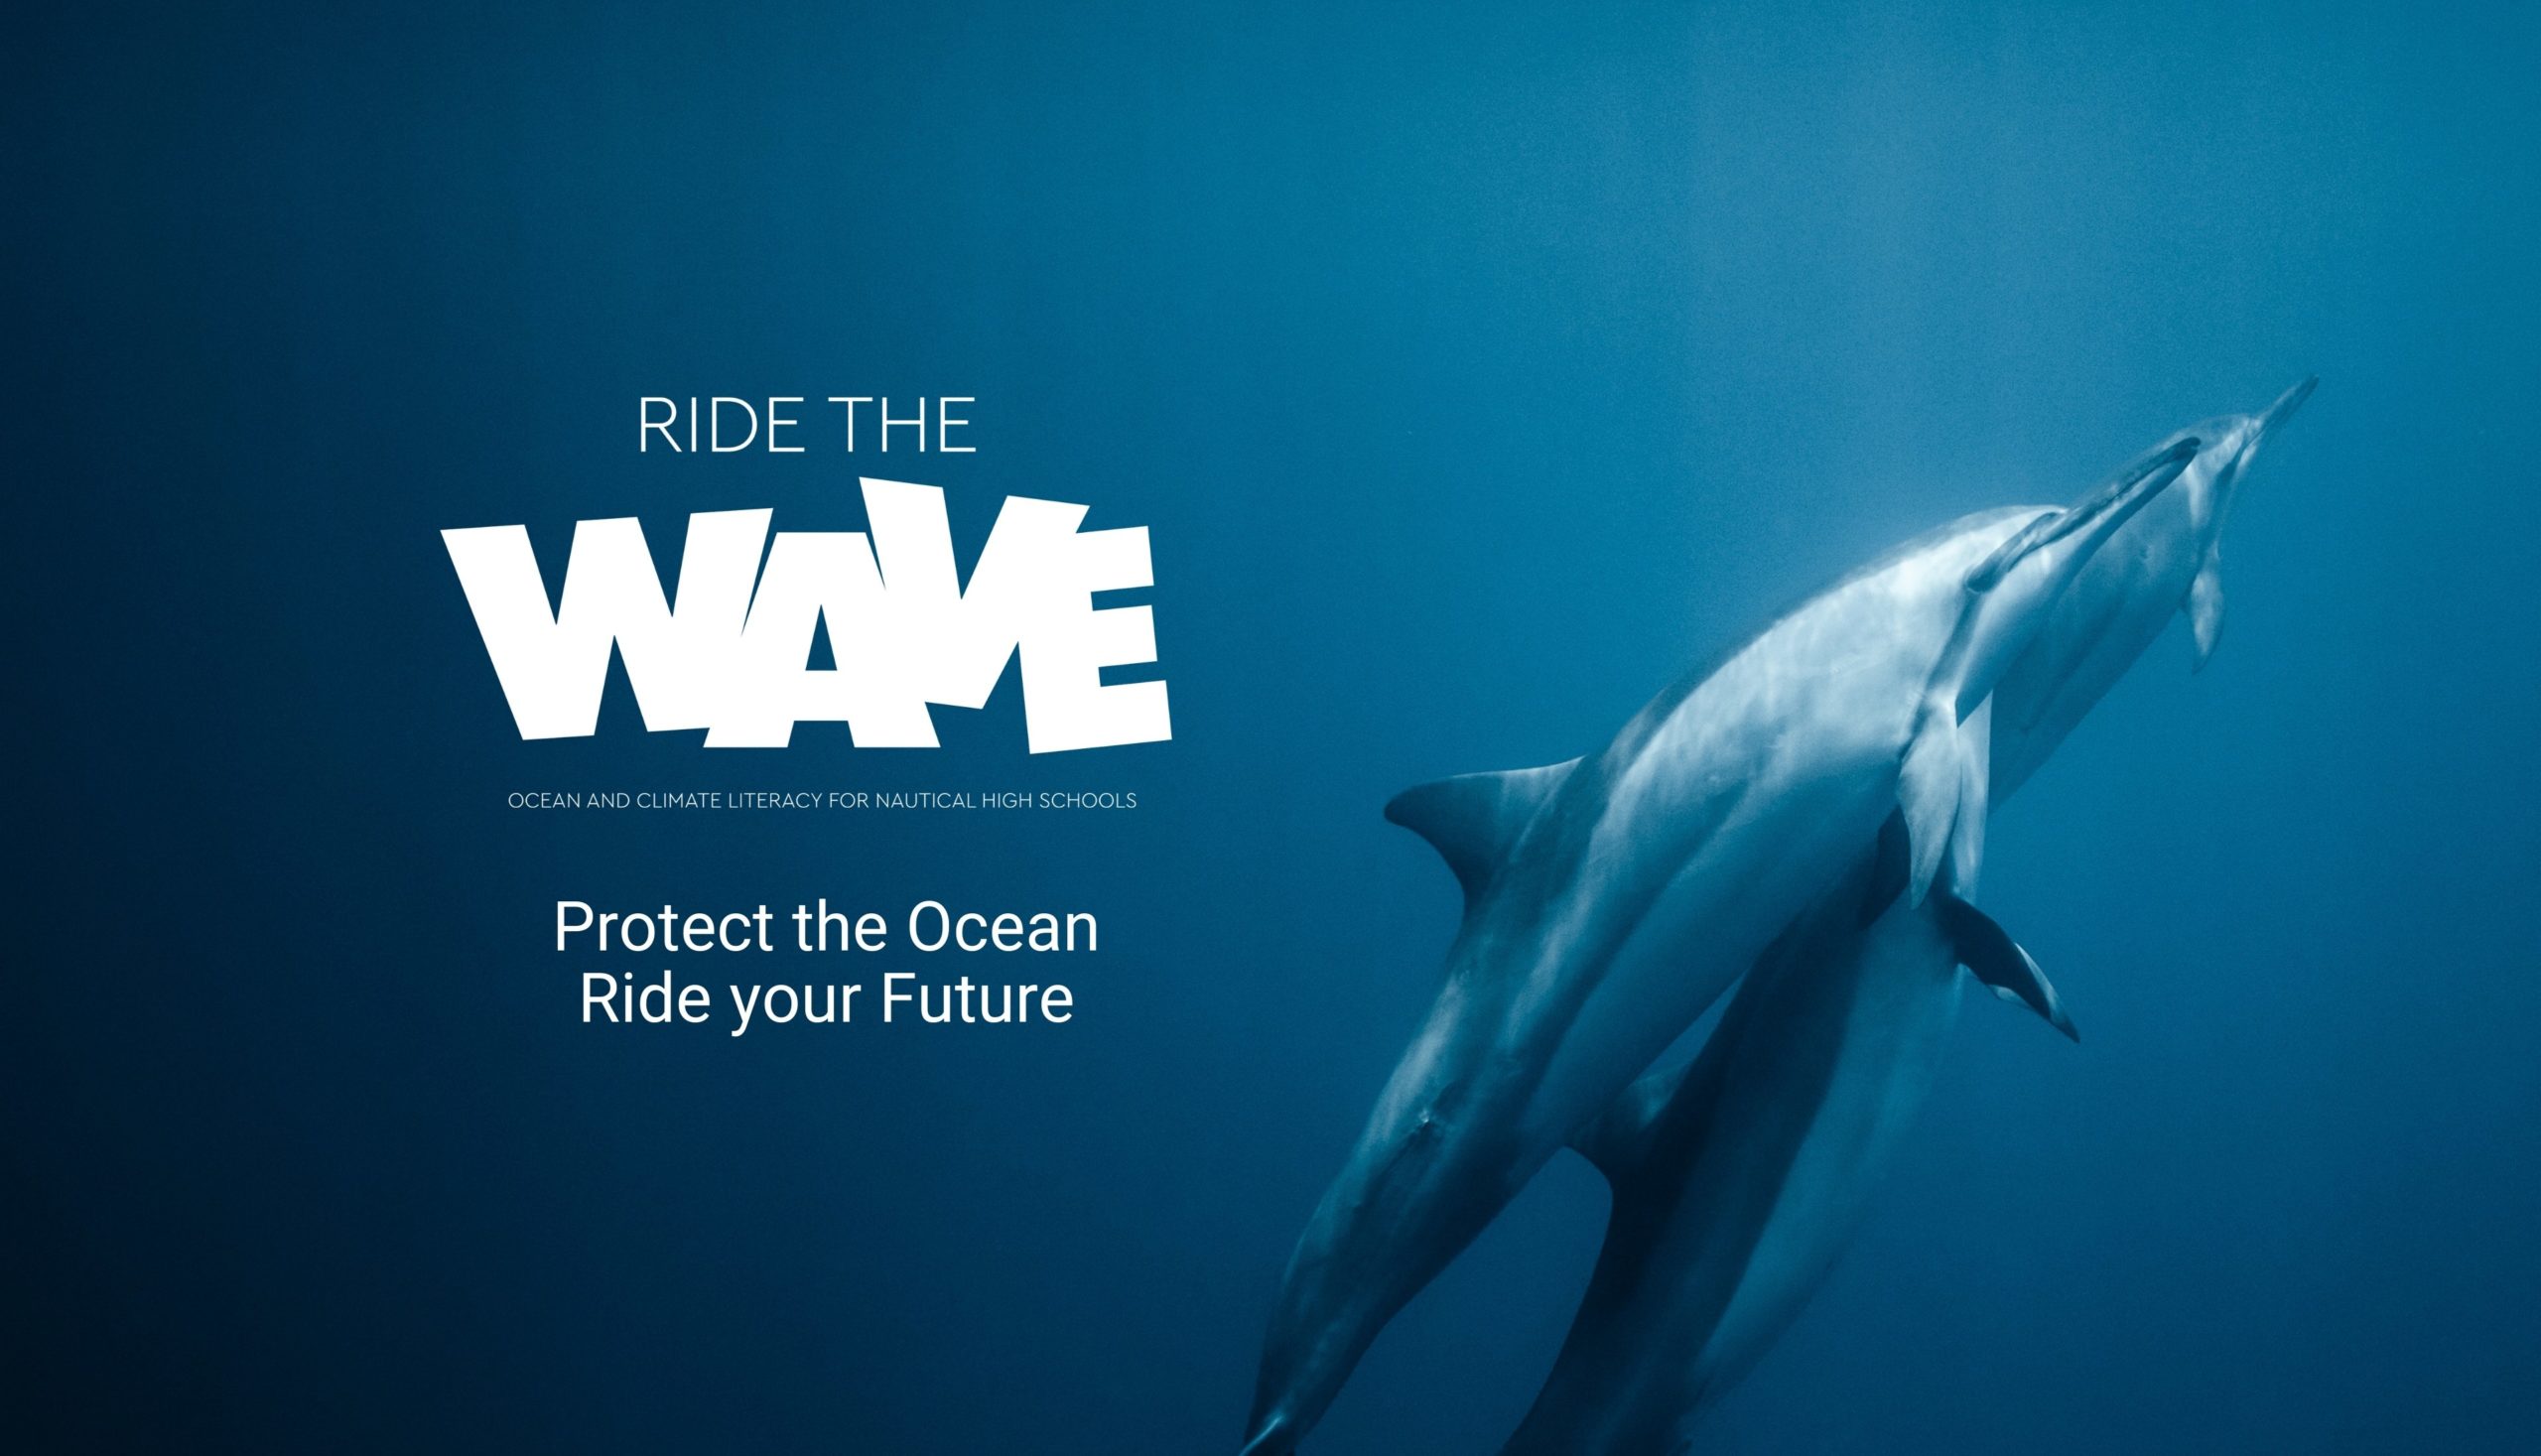 “Ride the Wave”: conclusi i tre webinar sull’Ocean&Climate Literacy con esperti internazionali